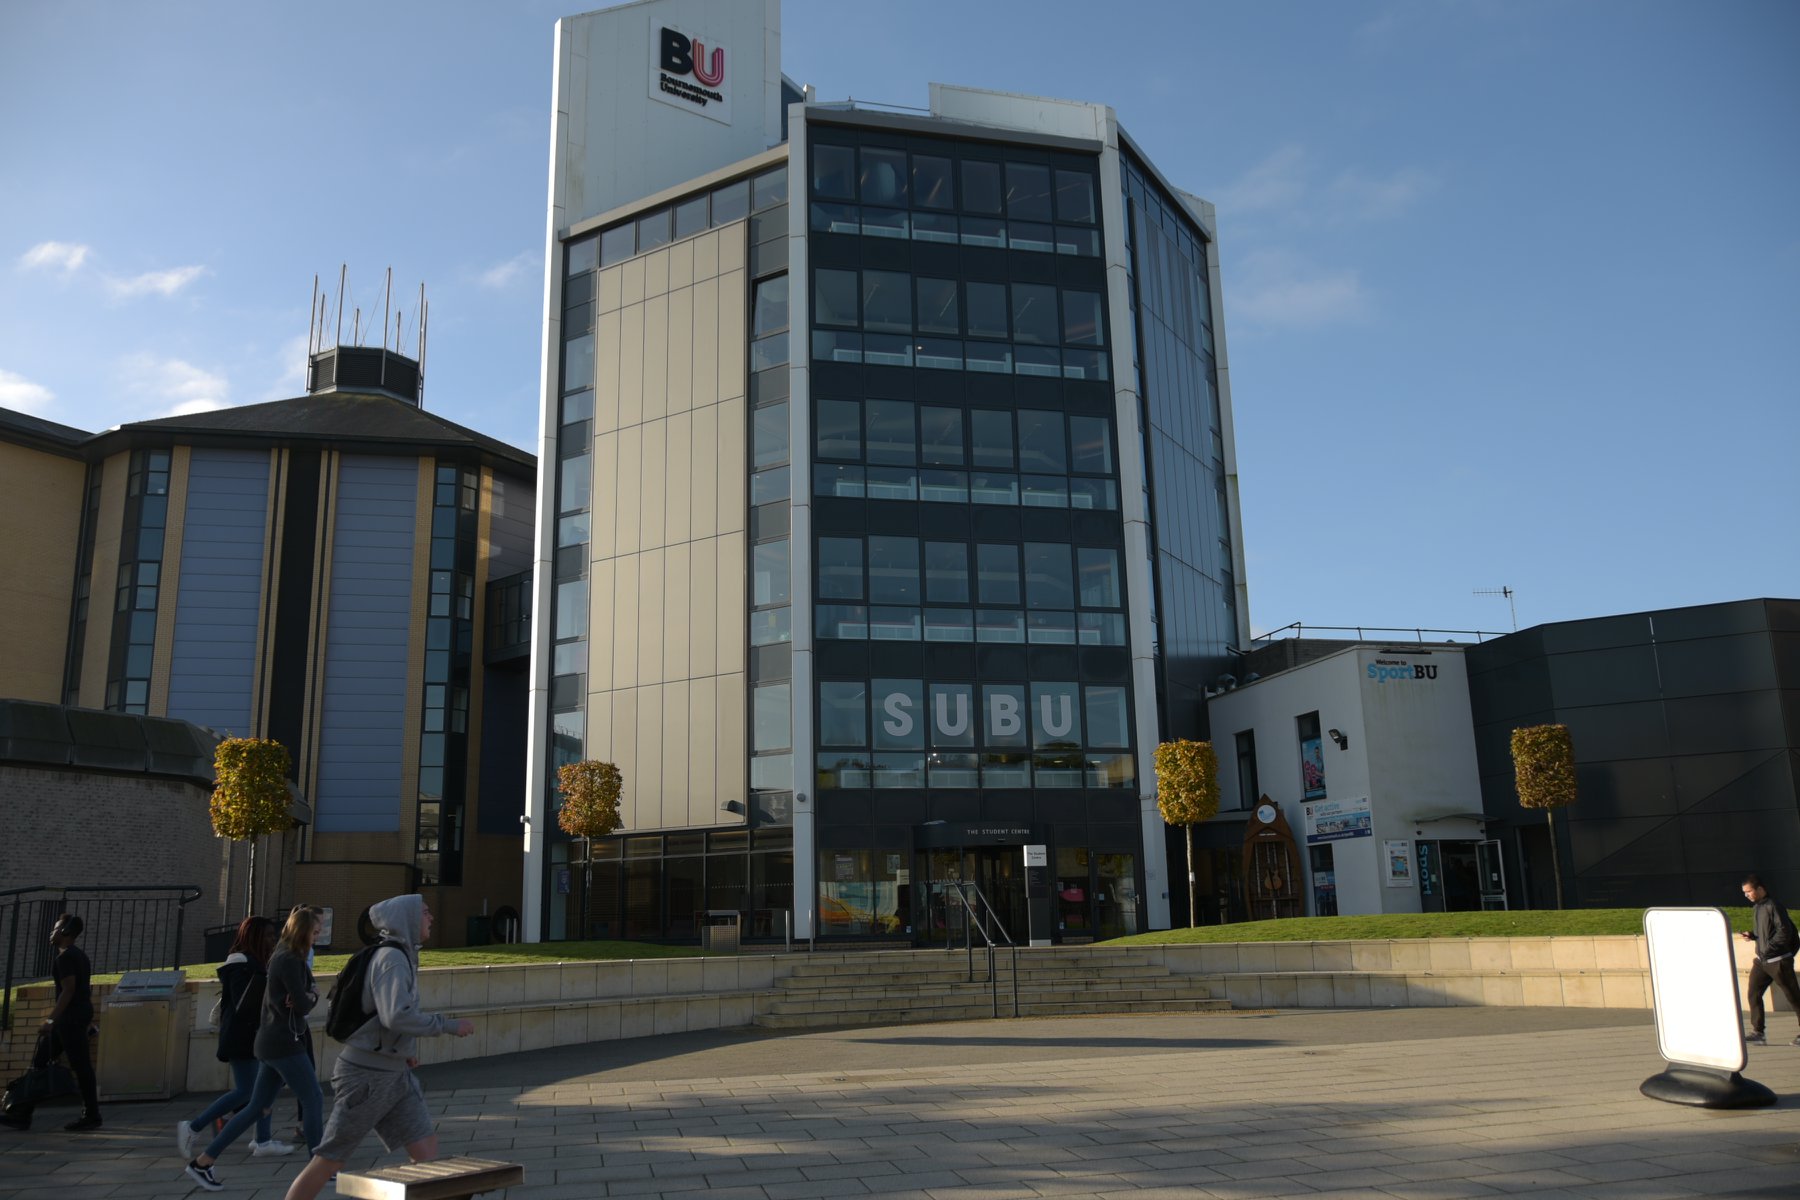 جامعة بورنموث – Bournemouth University